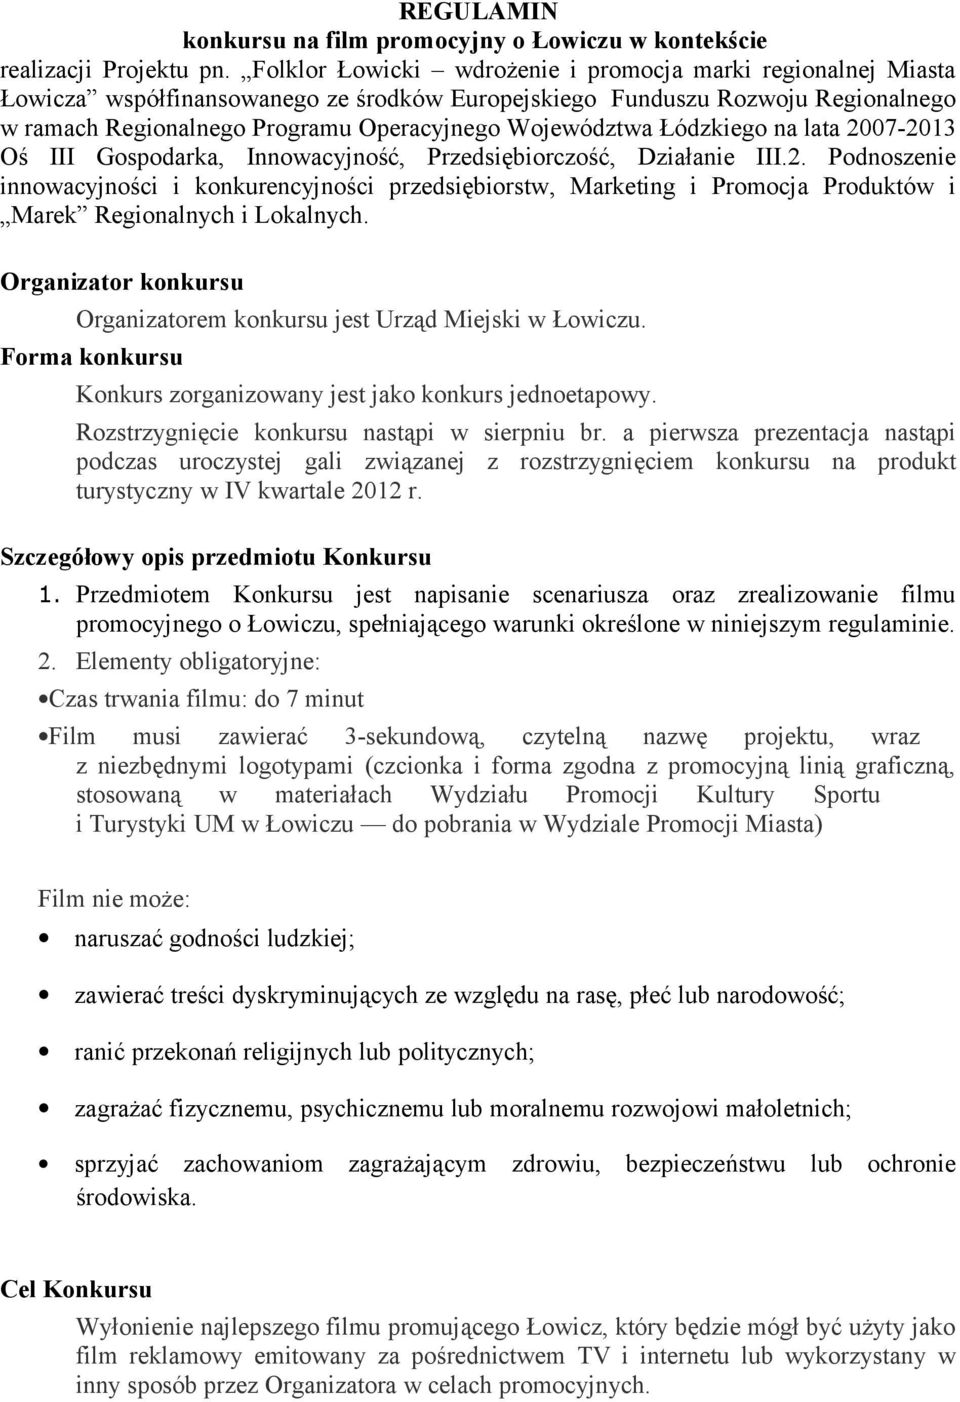 Łódzkiego na lata 2007-2013 Oś III Gospodarka, Innowacyjność, Przedsiębiorczość, Działanie III.2. Podnoszenie innowacyjności i konkurencyjności przedsiębiorstw, Marketing i Promocja Produktów i Marek Regionalnych i Lokalnych.